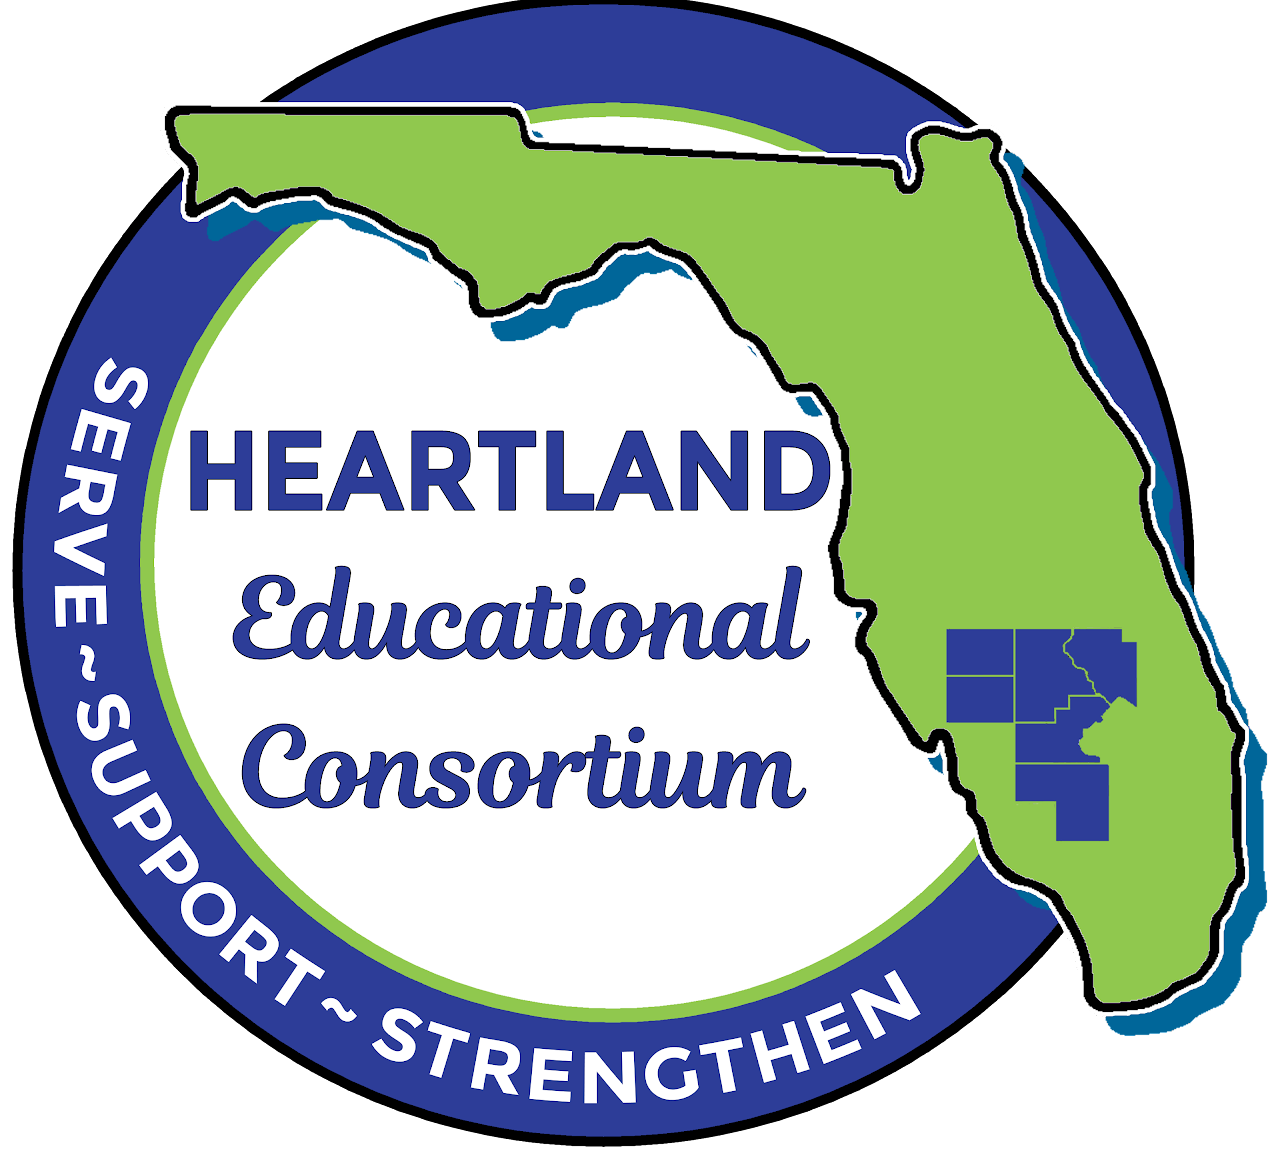 Heartland Educational Consortium